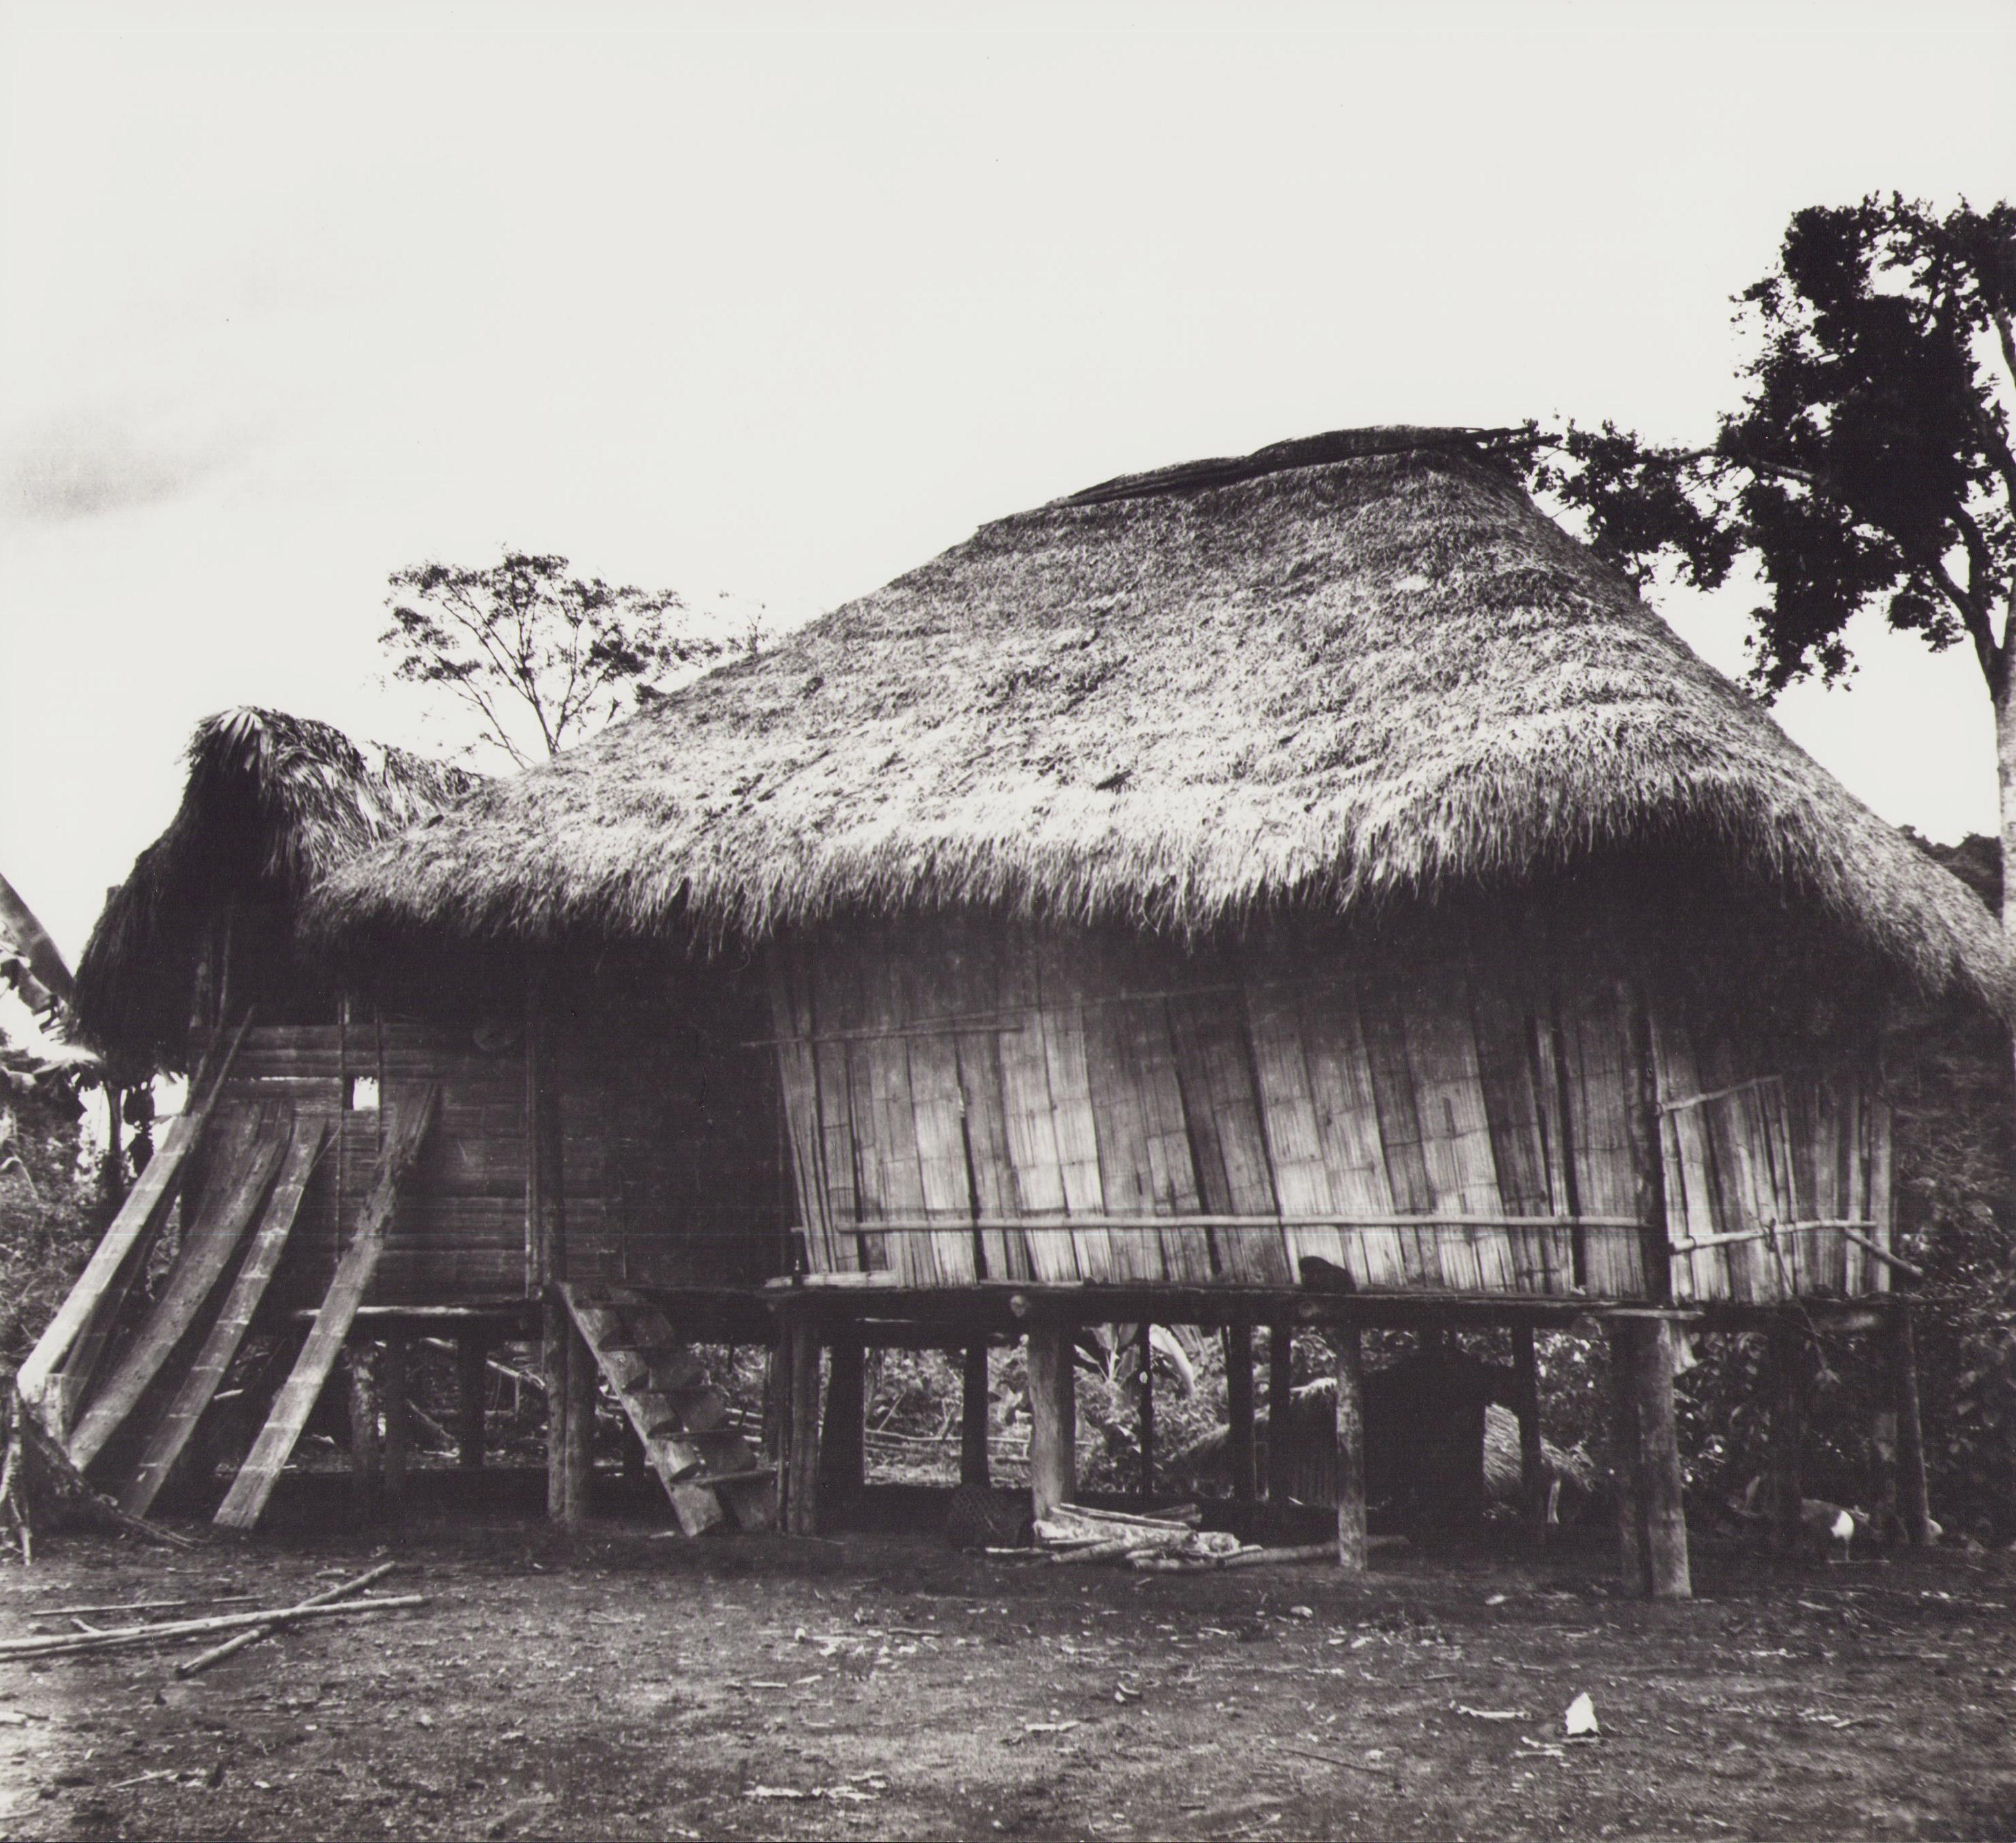 Hanna Seidel Portrait Photograph - Ecuador, Indigenous-Hut, Black and White Photography, 1960s, 23, 2 x 25, 4 cm